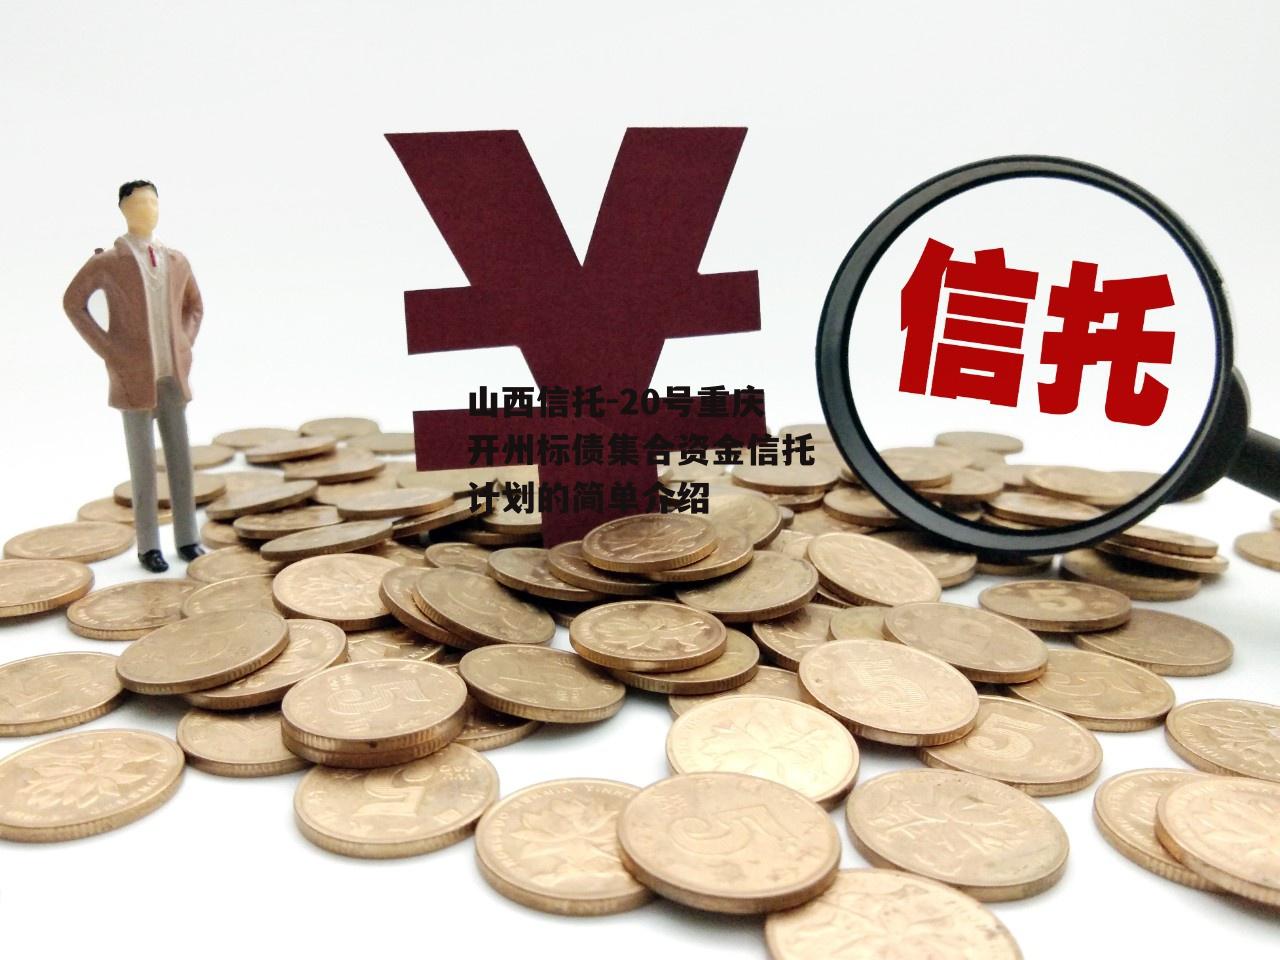 山西信托-20号重庆开州标债集合资金信托计划的简单介绍